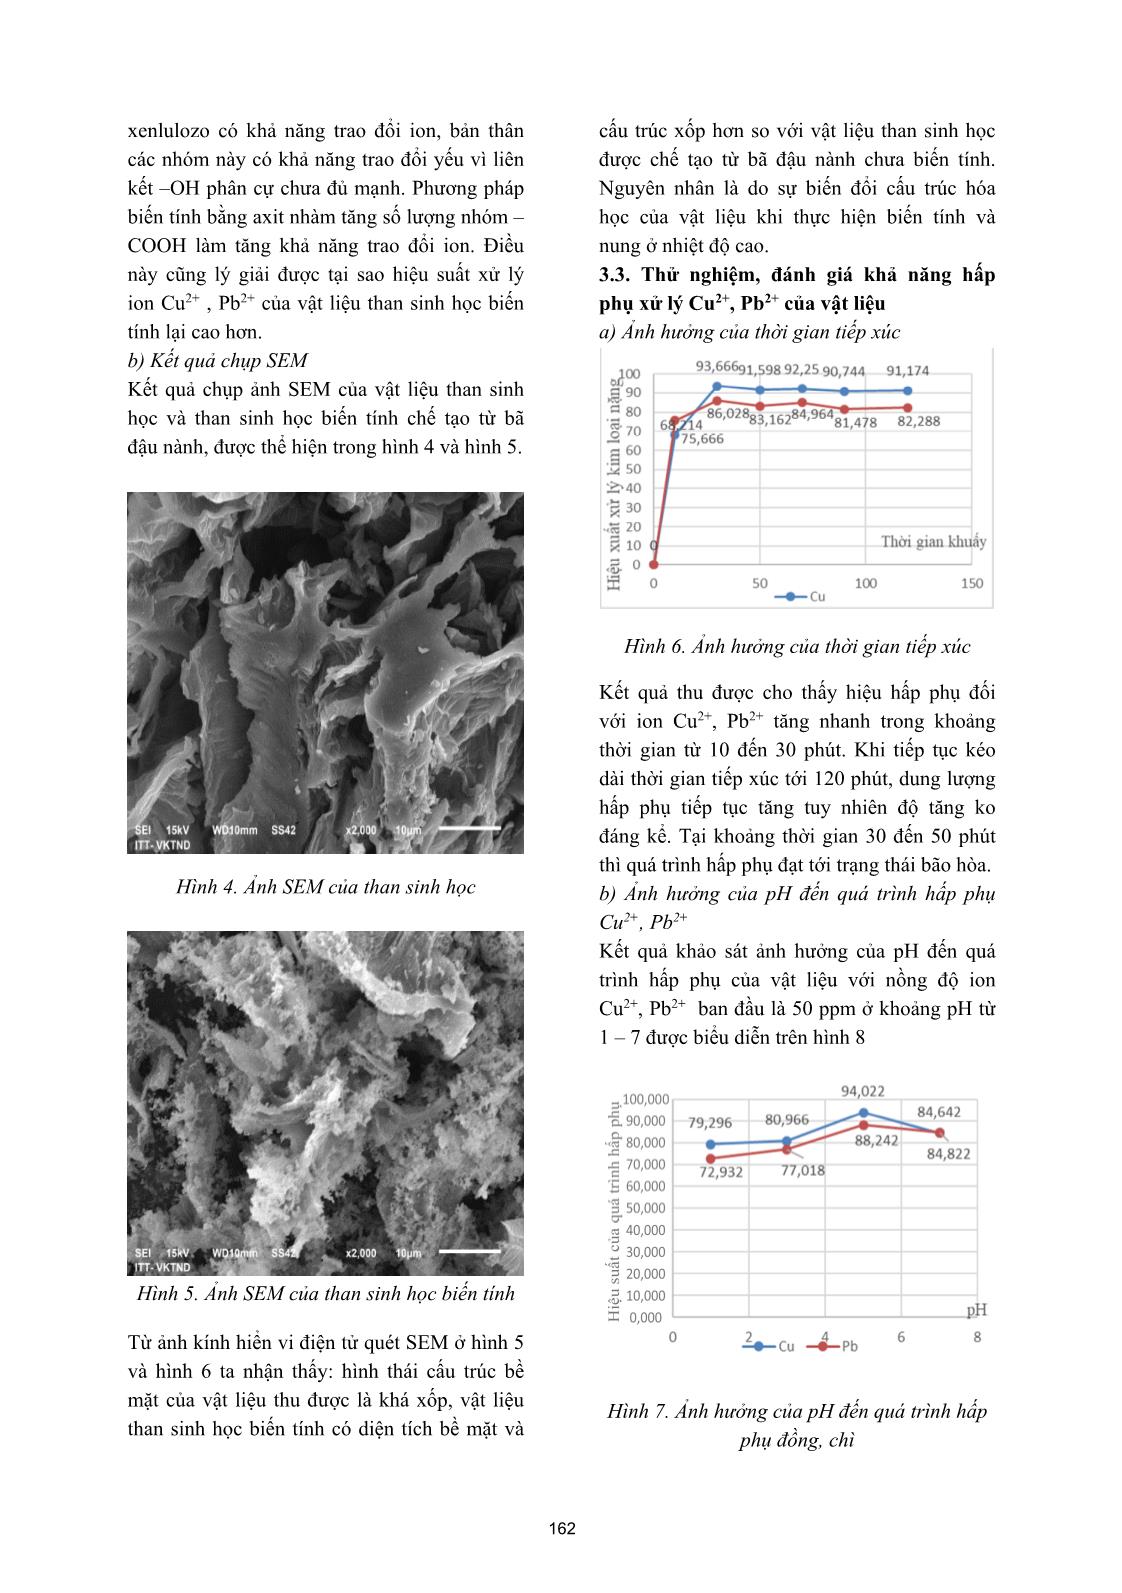 Nghiên cứu chế tạo than sinh học từ bã đậu nành để xử lý Cu₂⁺ , Pb₂⁺ trong nước trang 4